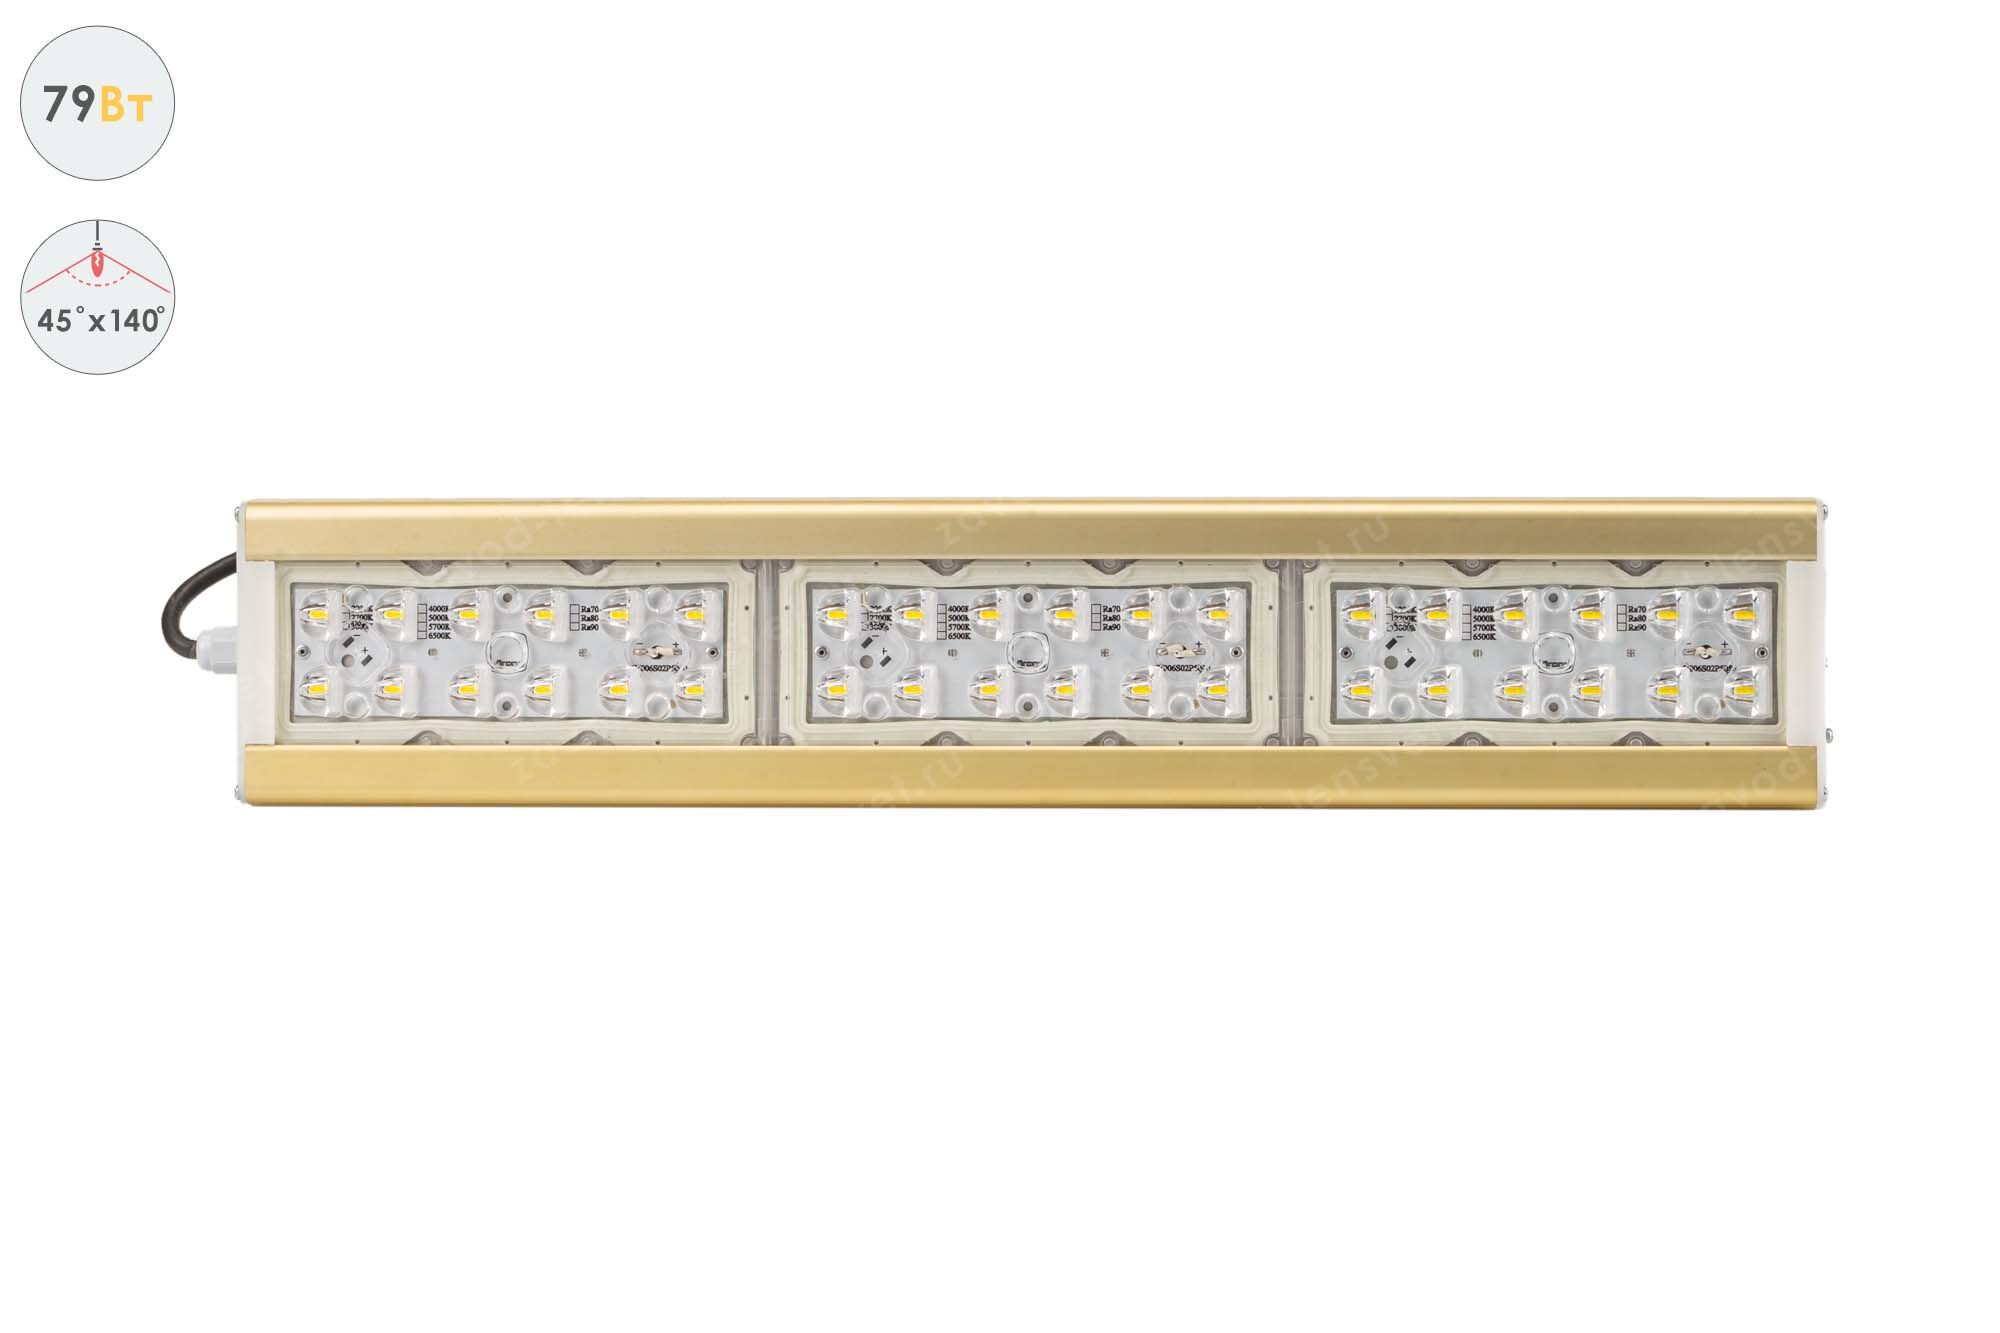 Светодиодный светильник Магистраль GOLD, консоль K-1, 79 Вт, 45X140°